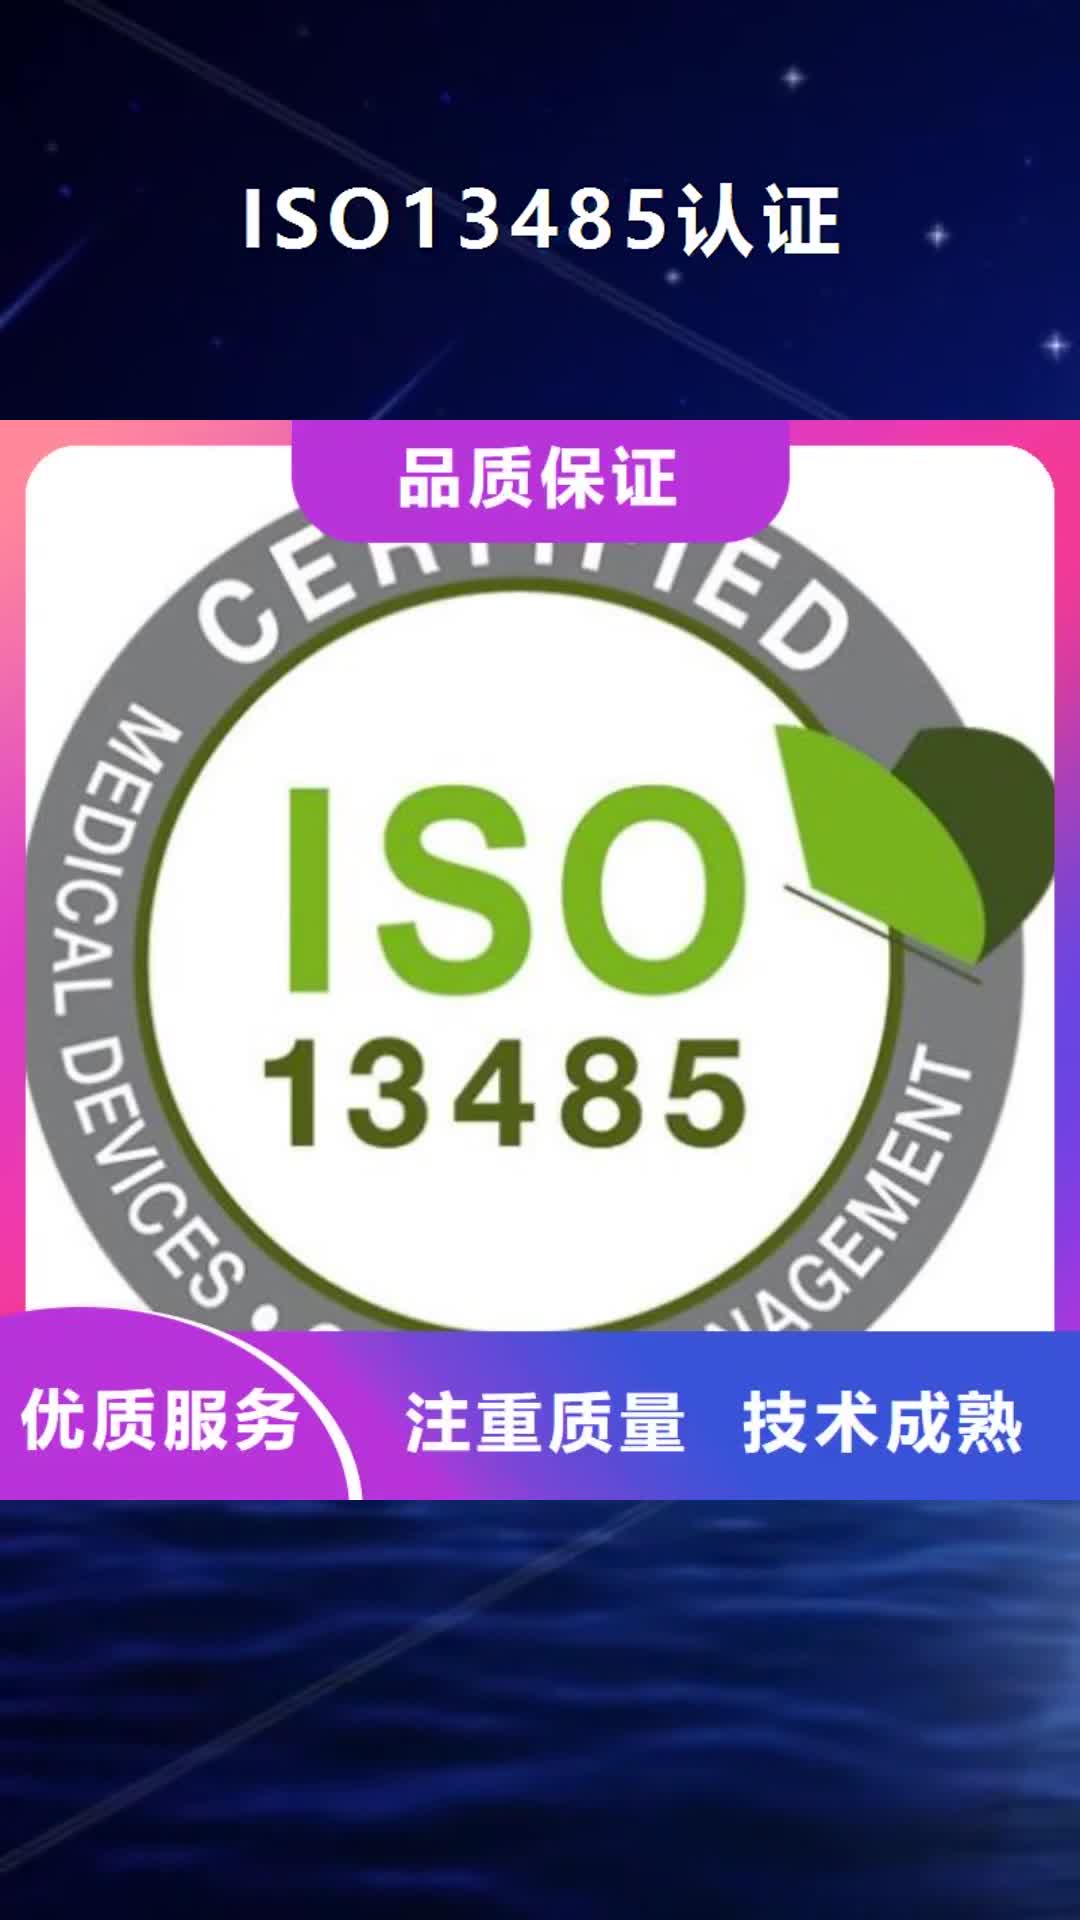 【秦皇岛 ISO13485认证-AS9100认证技术成熟】